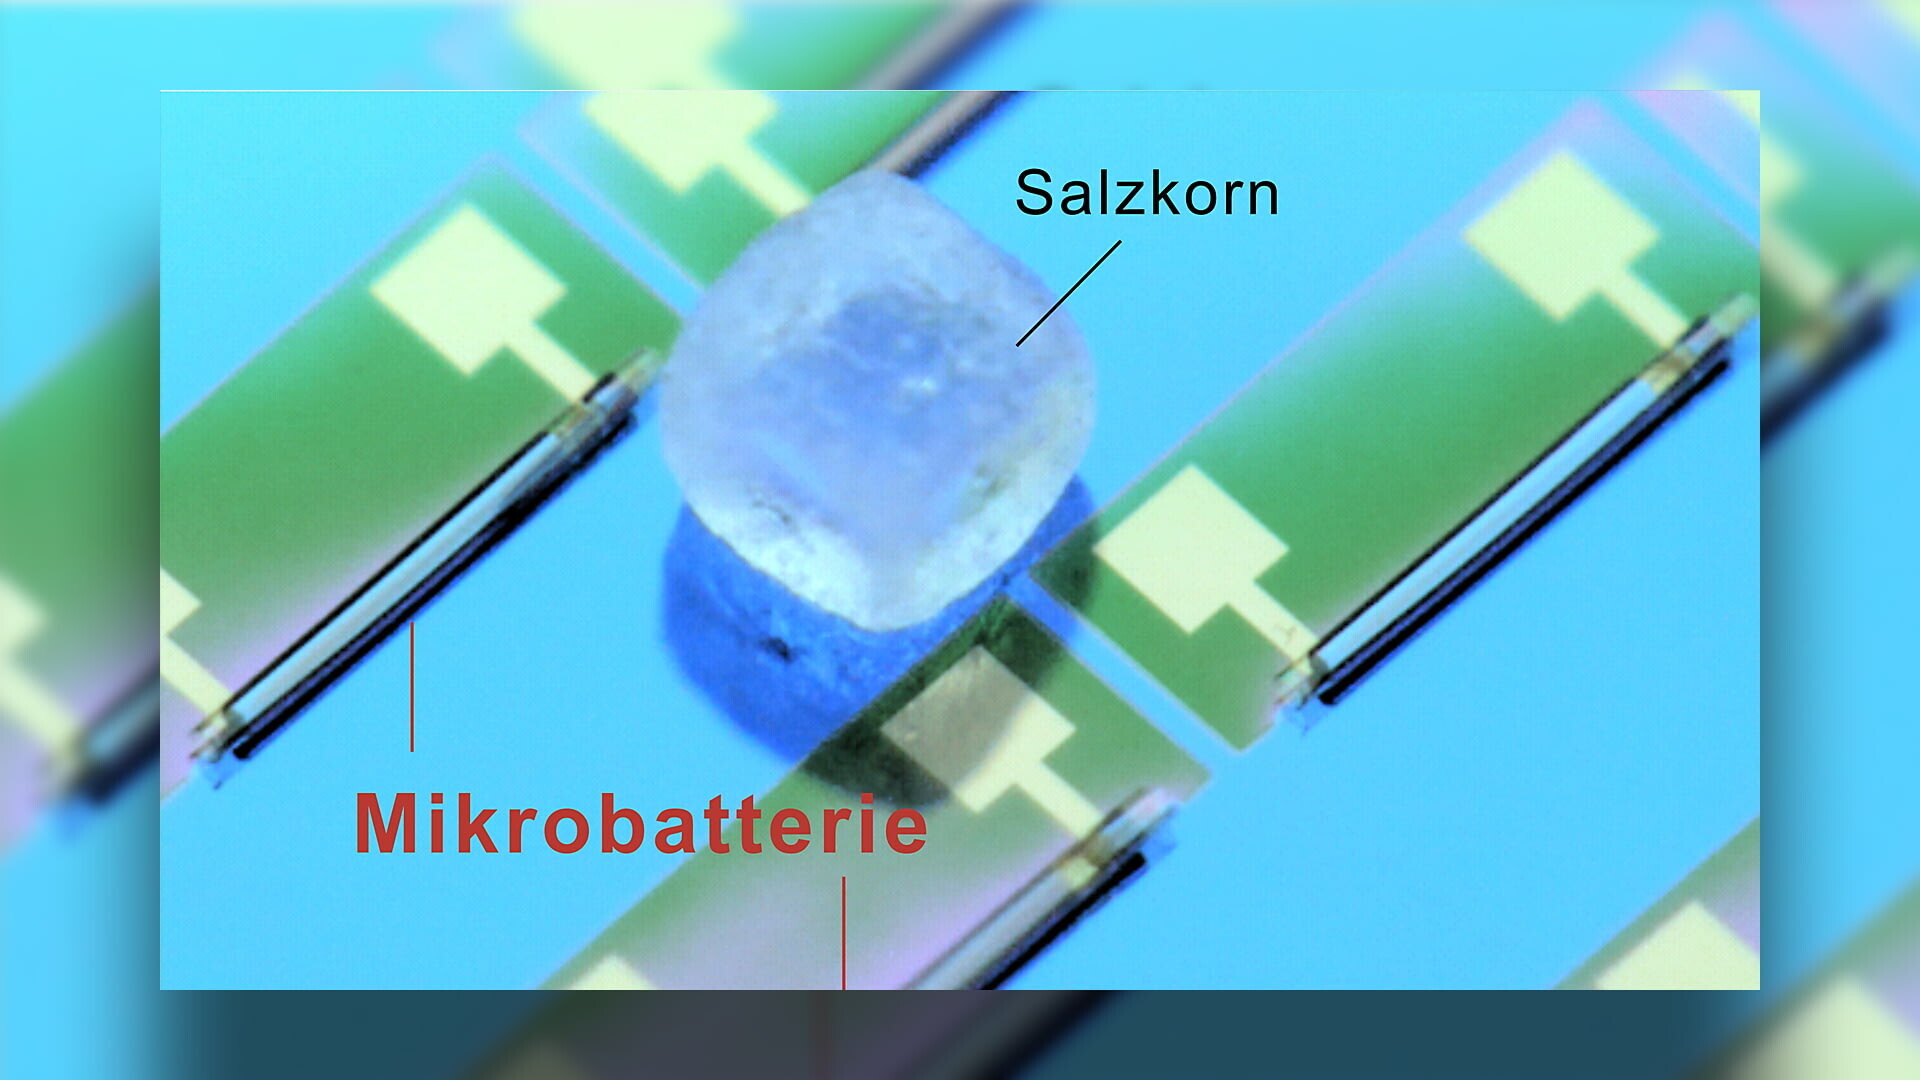 Учёные создали батарейку размером с крупицу соли